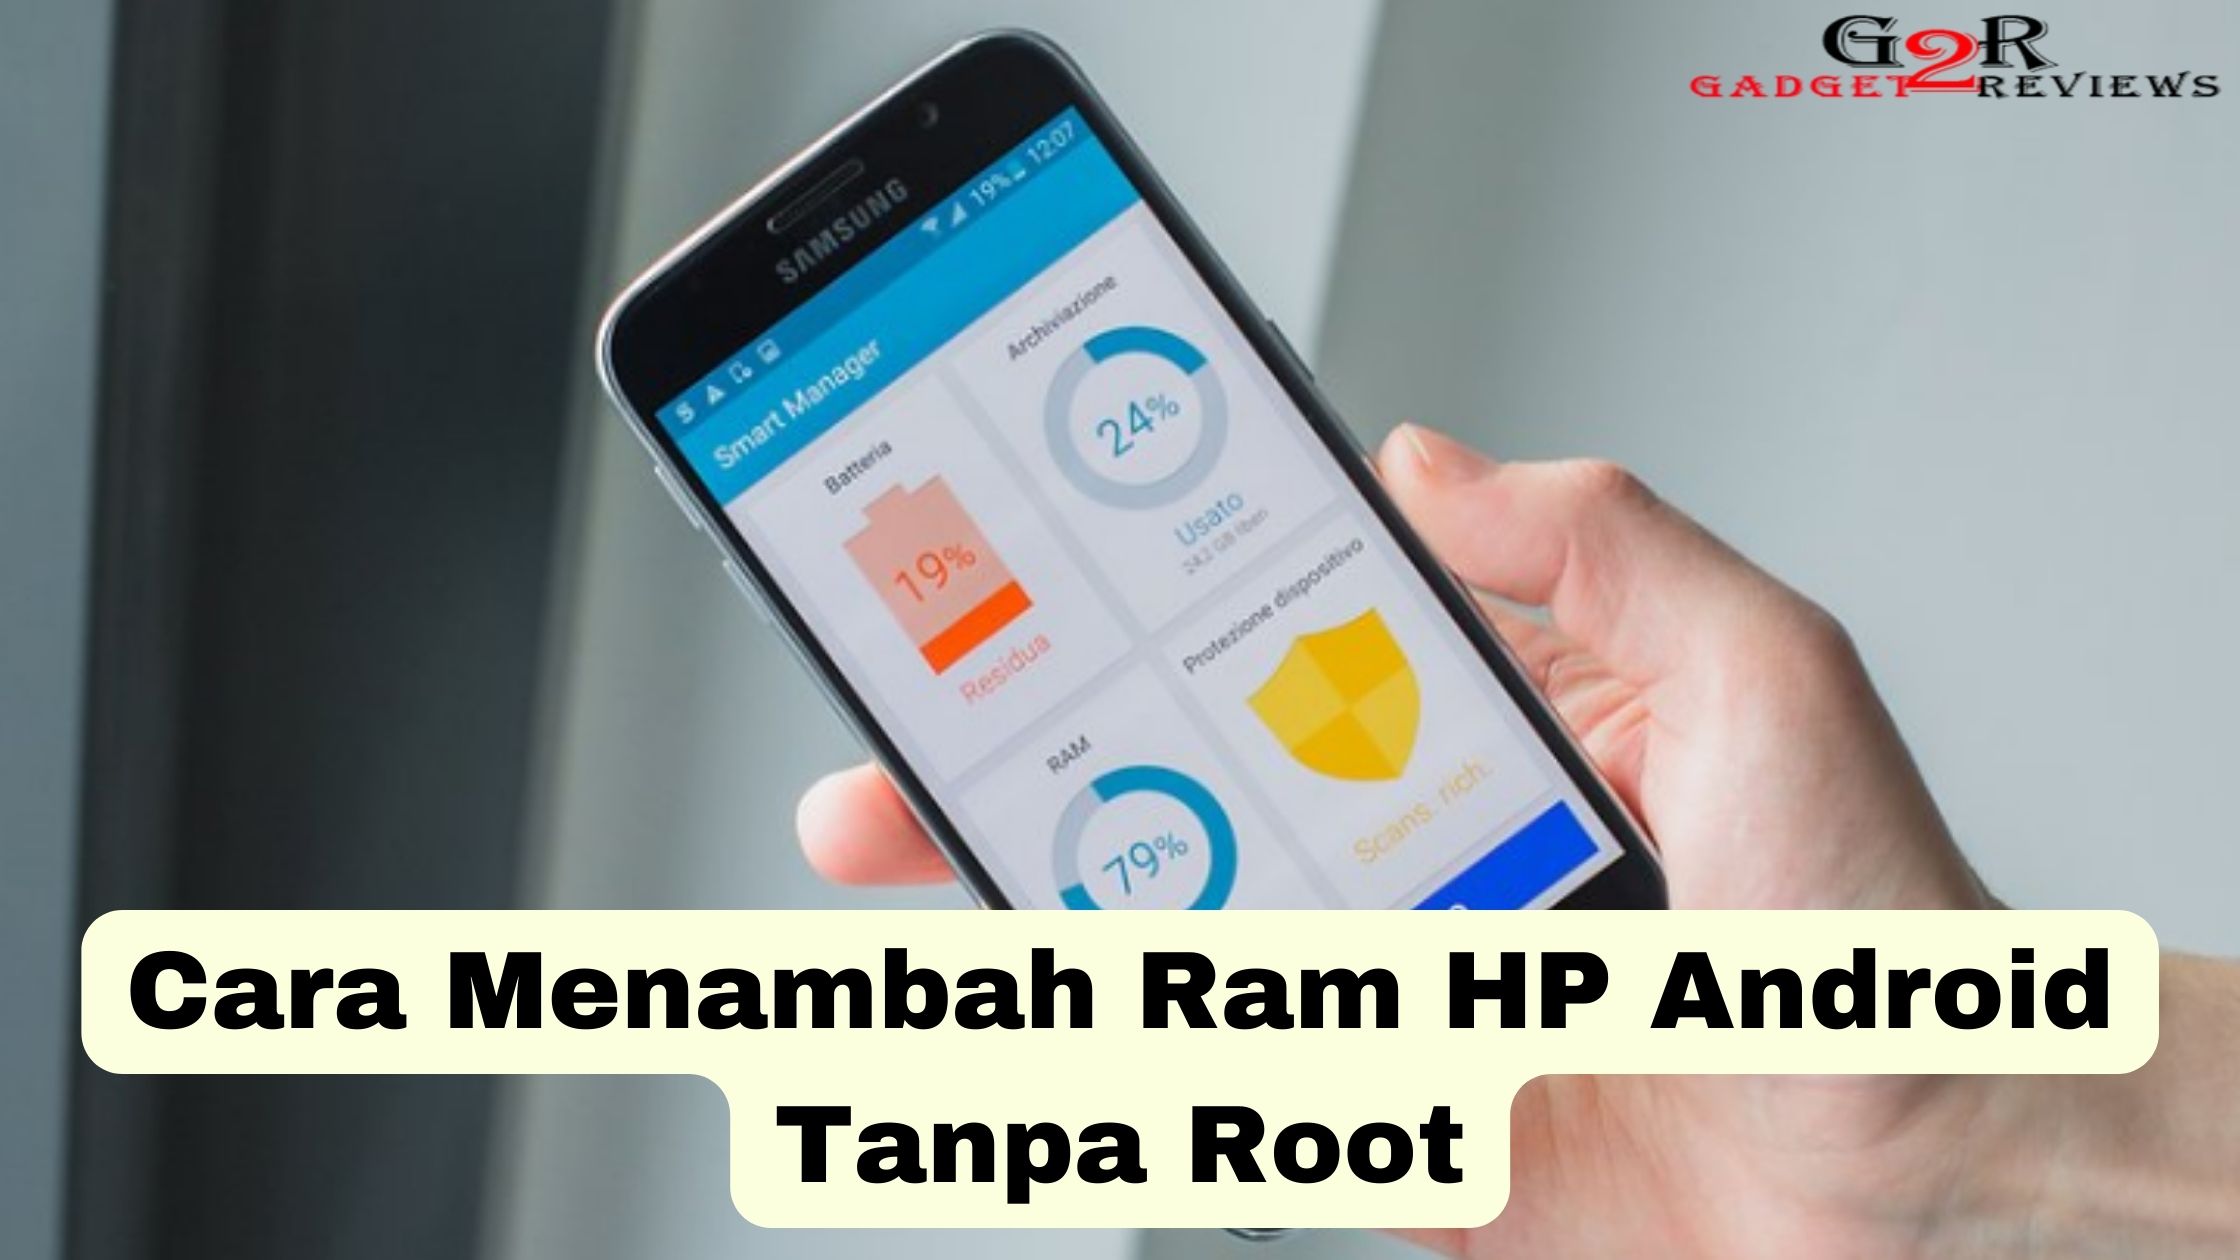 Cara Menambah Ram HP Android Tanpa Root